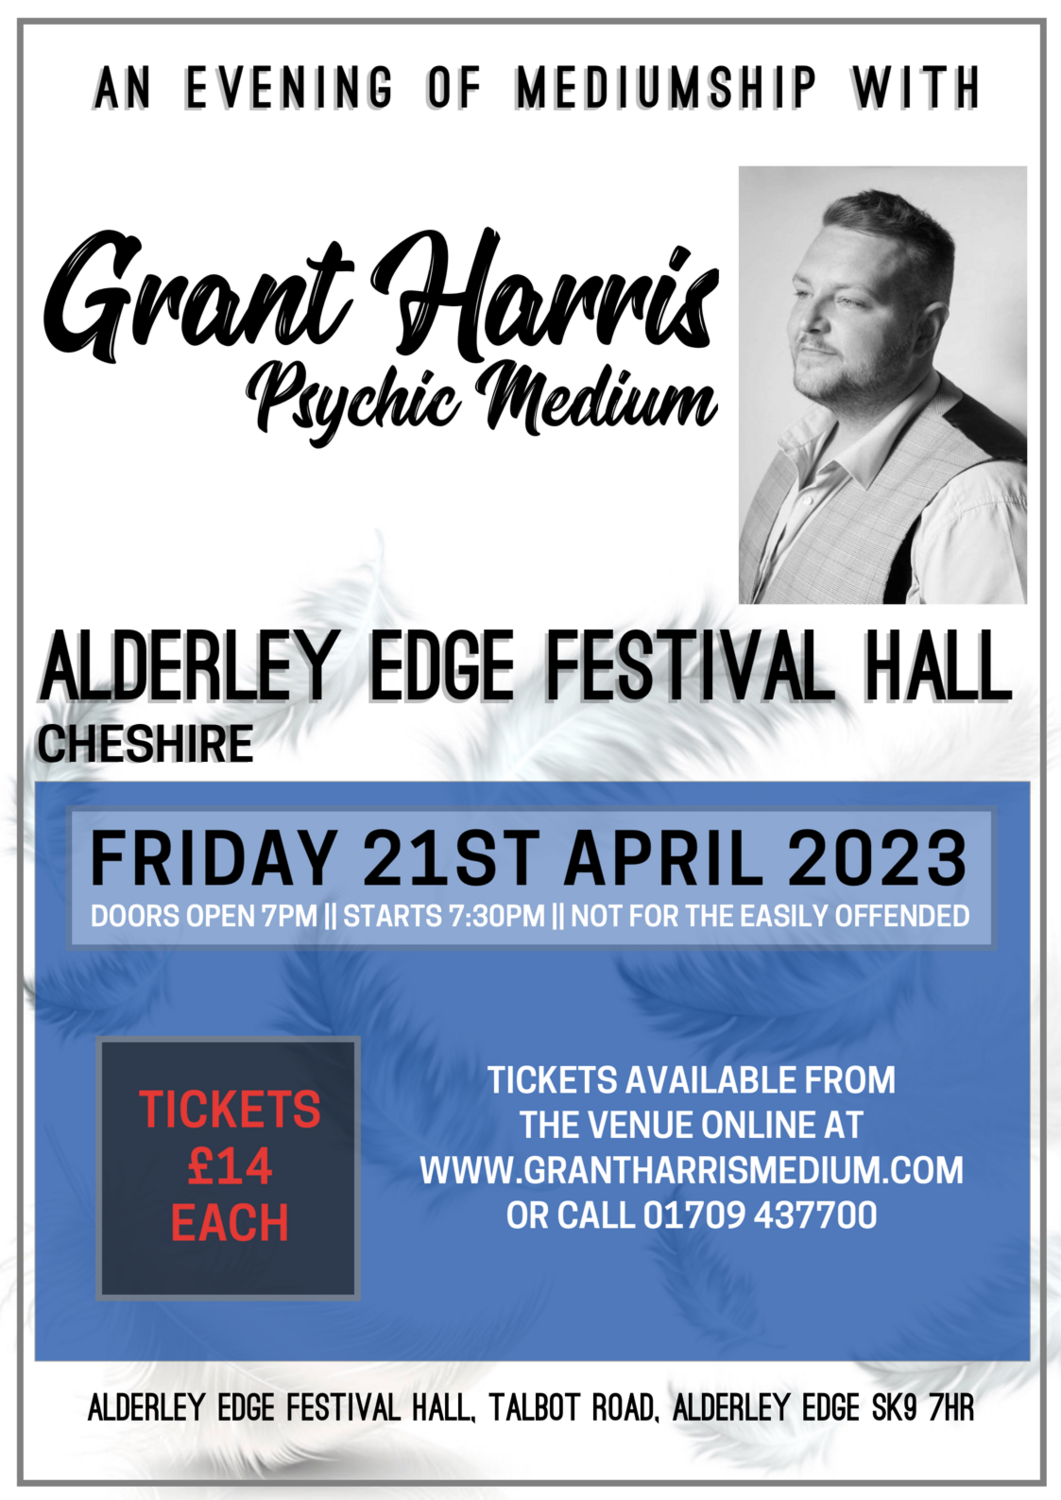 Alderley Edge Festival Hall, Manchester, Friday 21st April 2023